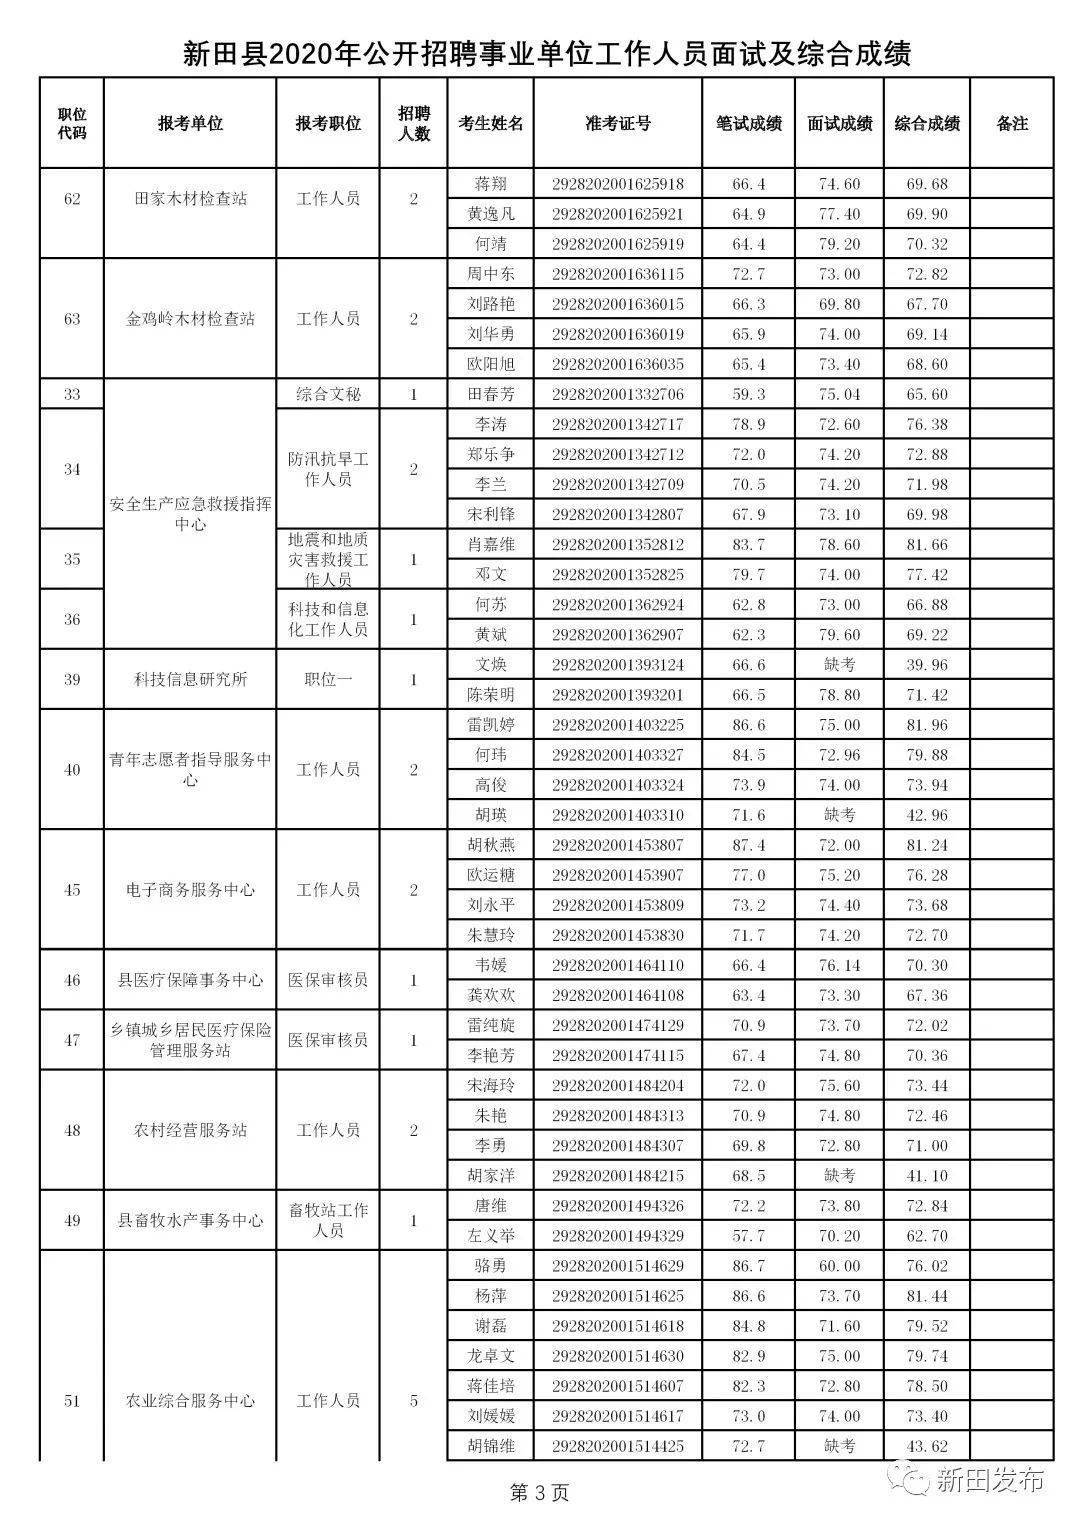 新田县各局长名单图片